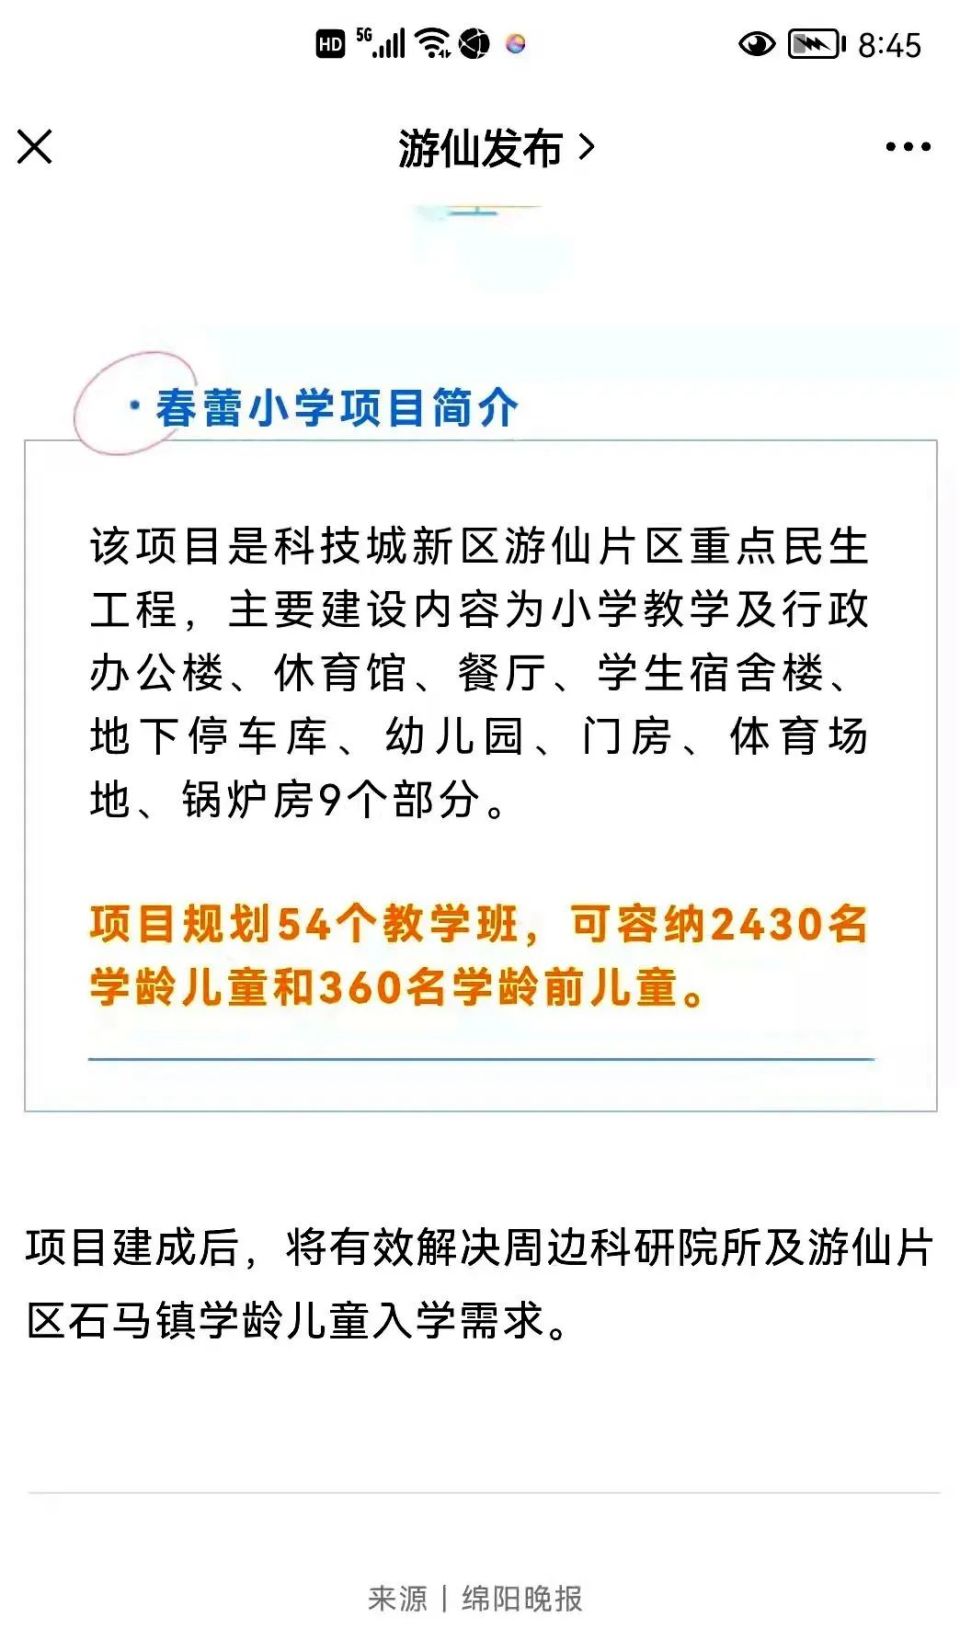 绵阳经开区三江实验学校进入装修期，还有两所学校也将在9月投入使用